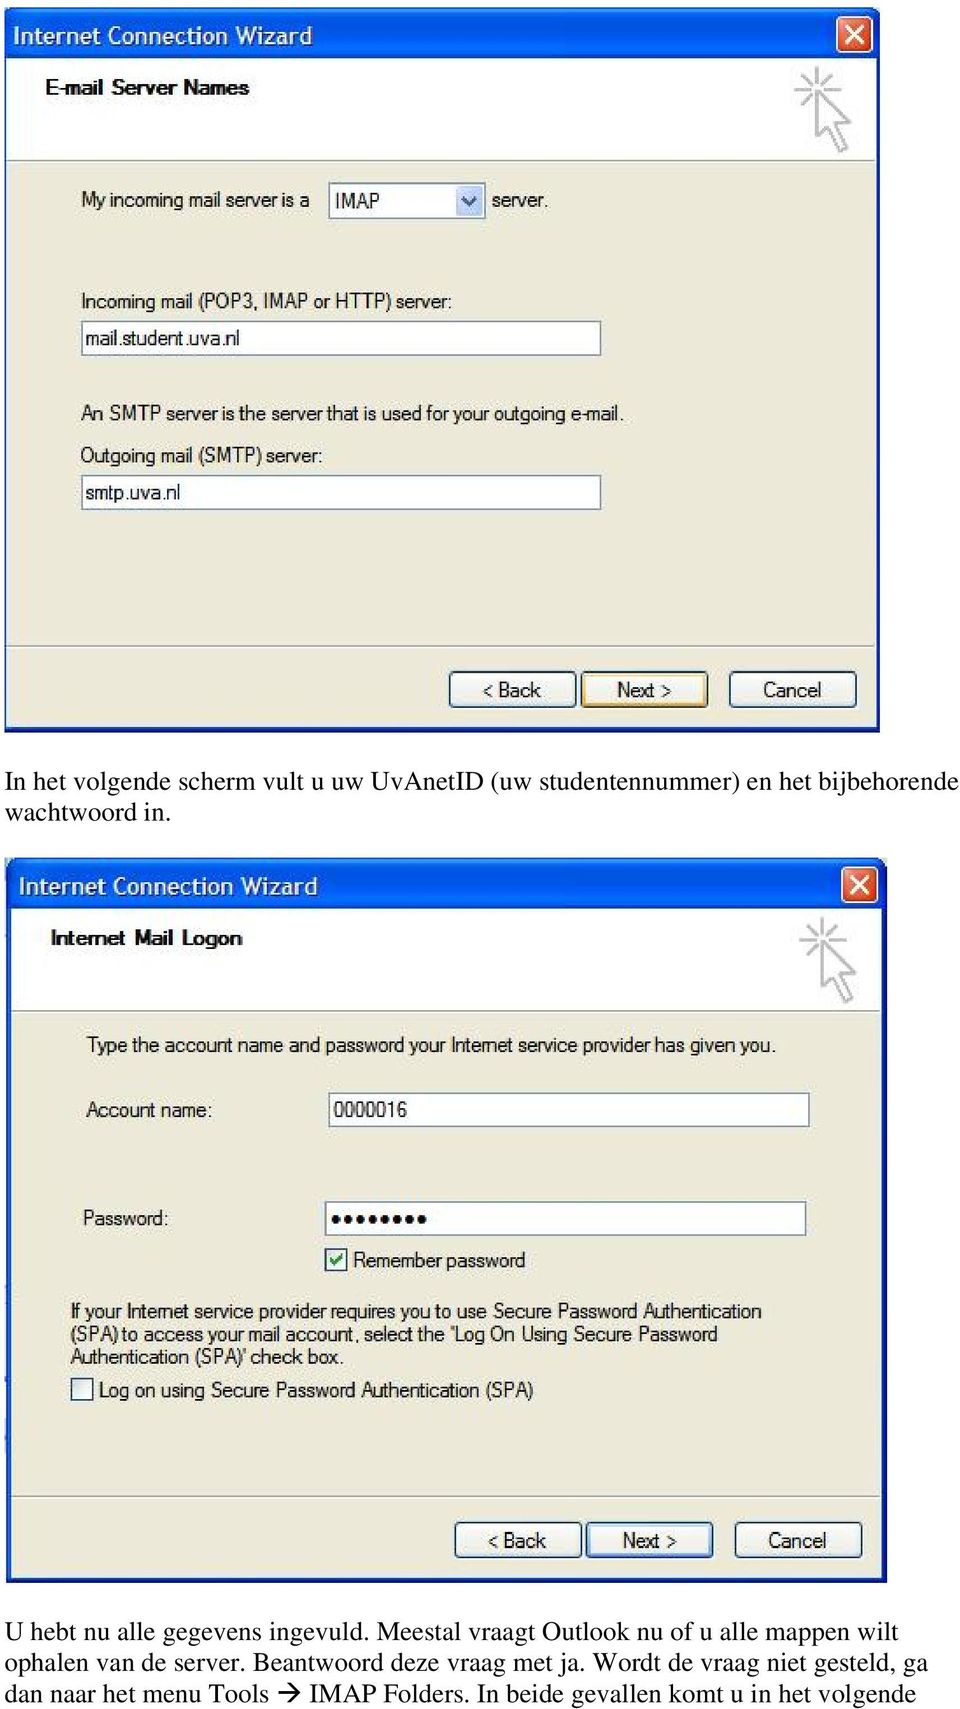 Meestal vraagt Outlook nu of u alle mappen wilt ophalen van de server.